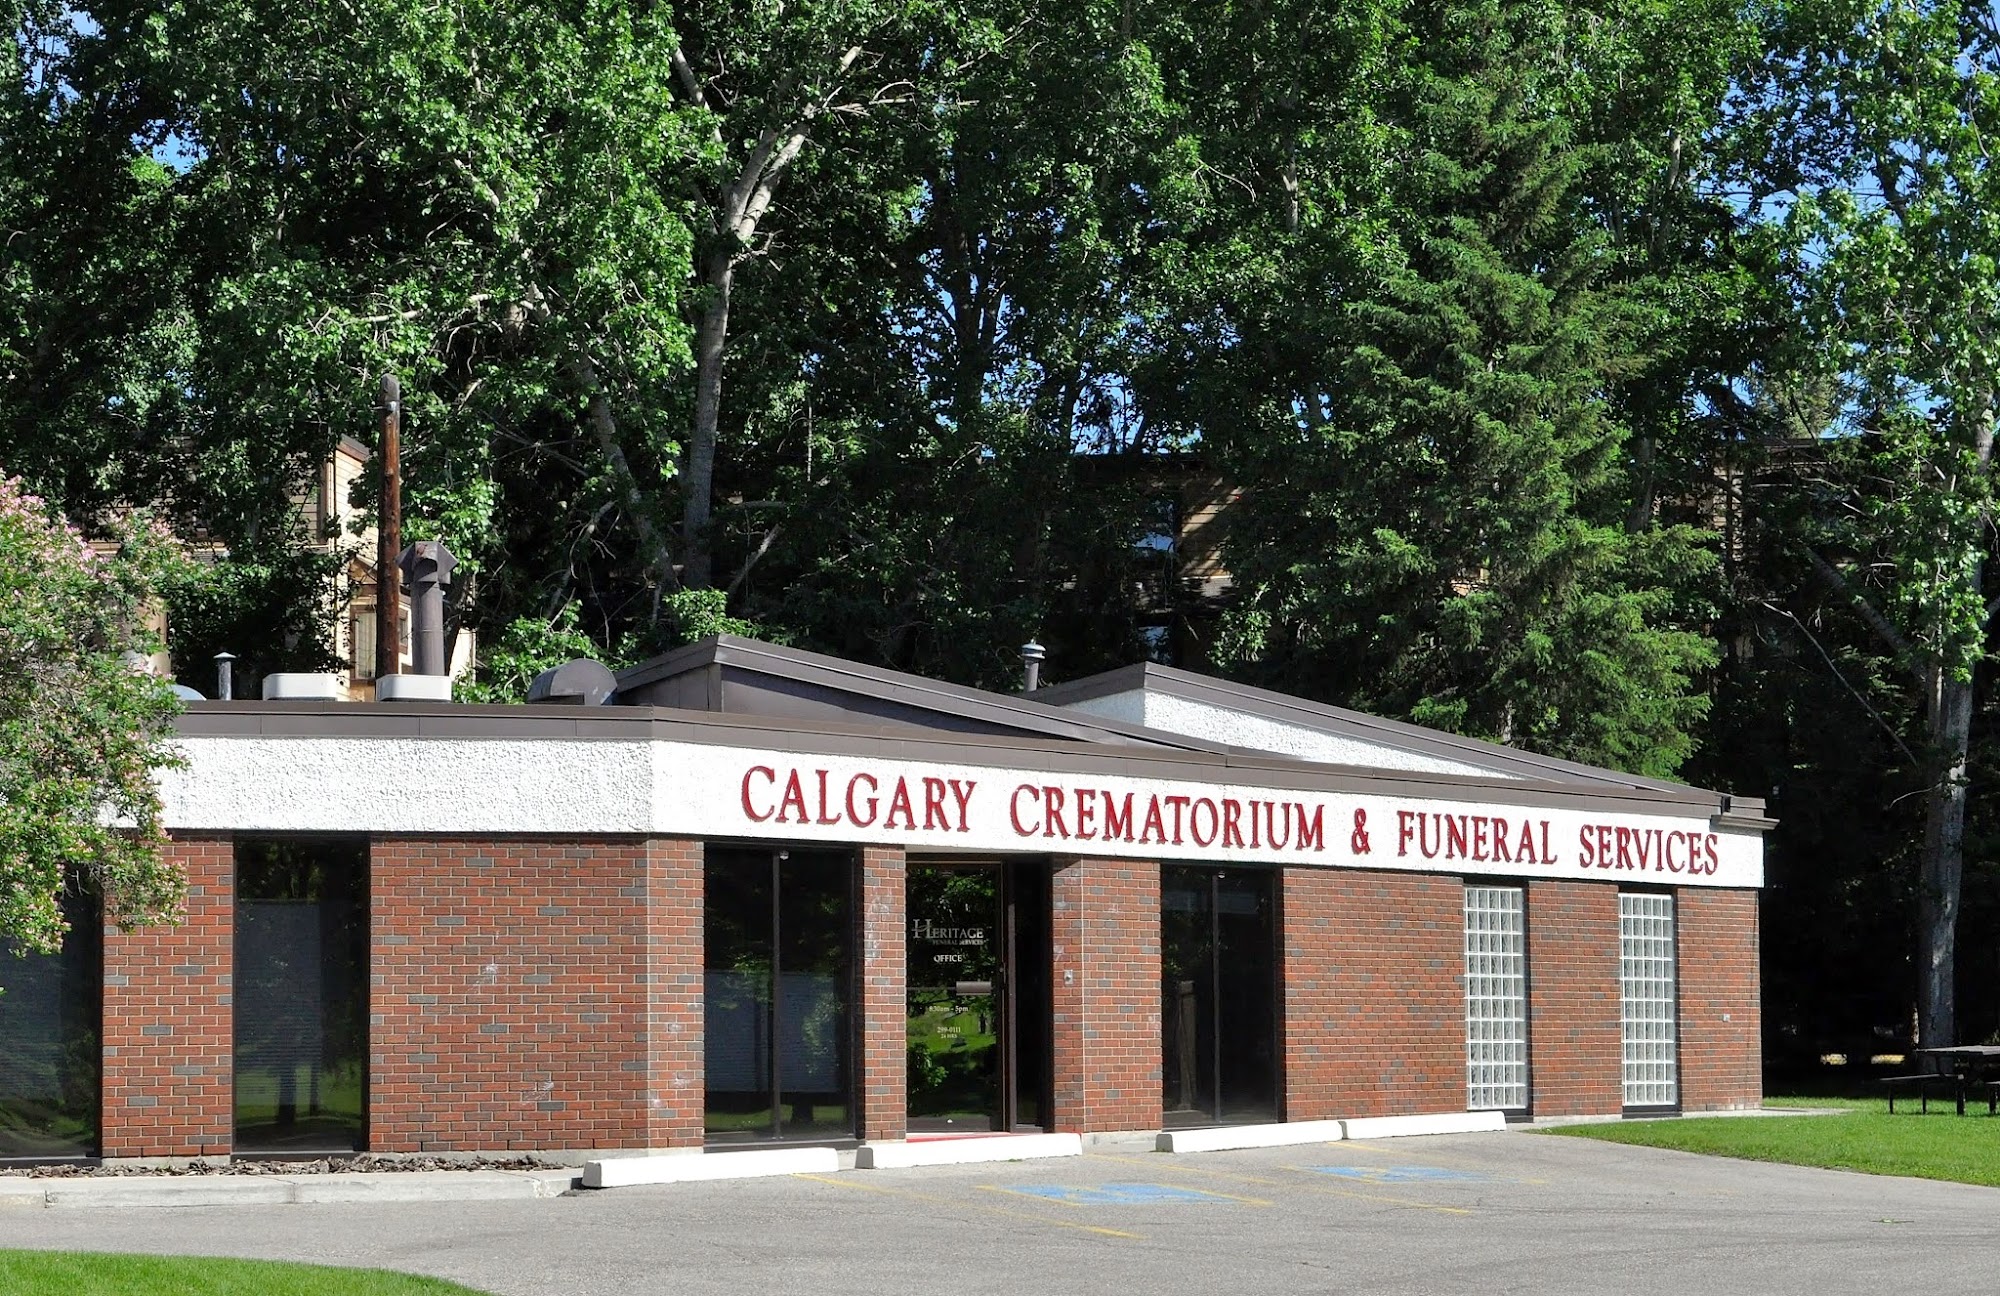 Calgary Crematorium & Funeral Services